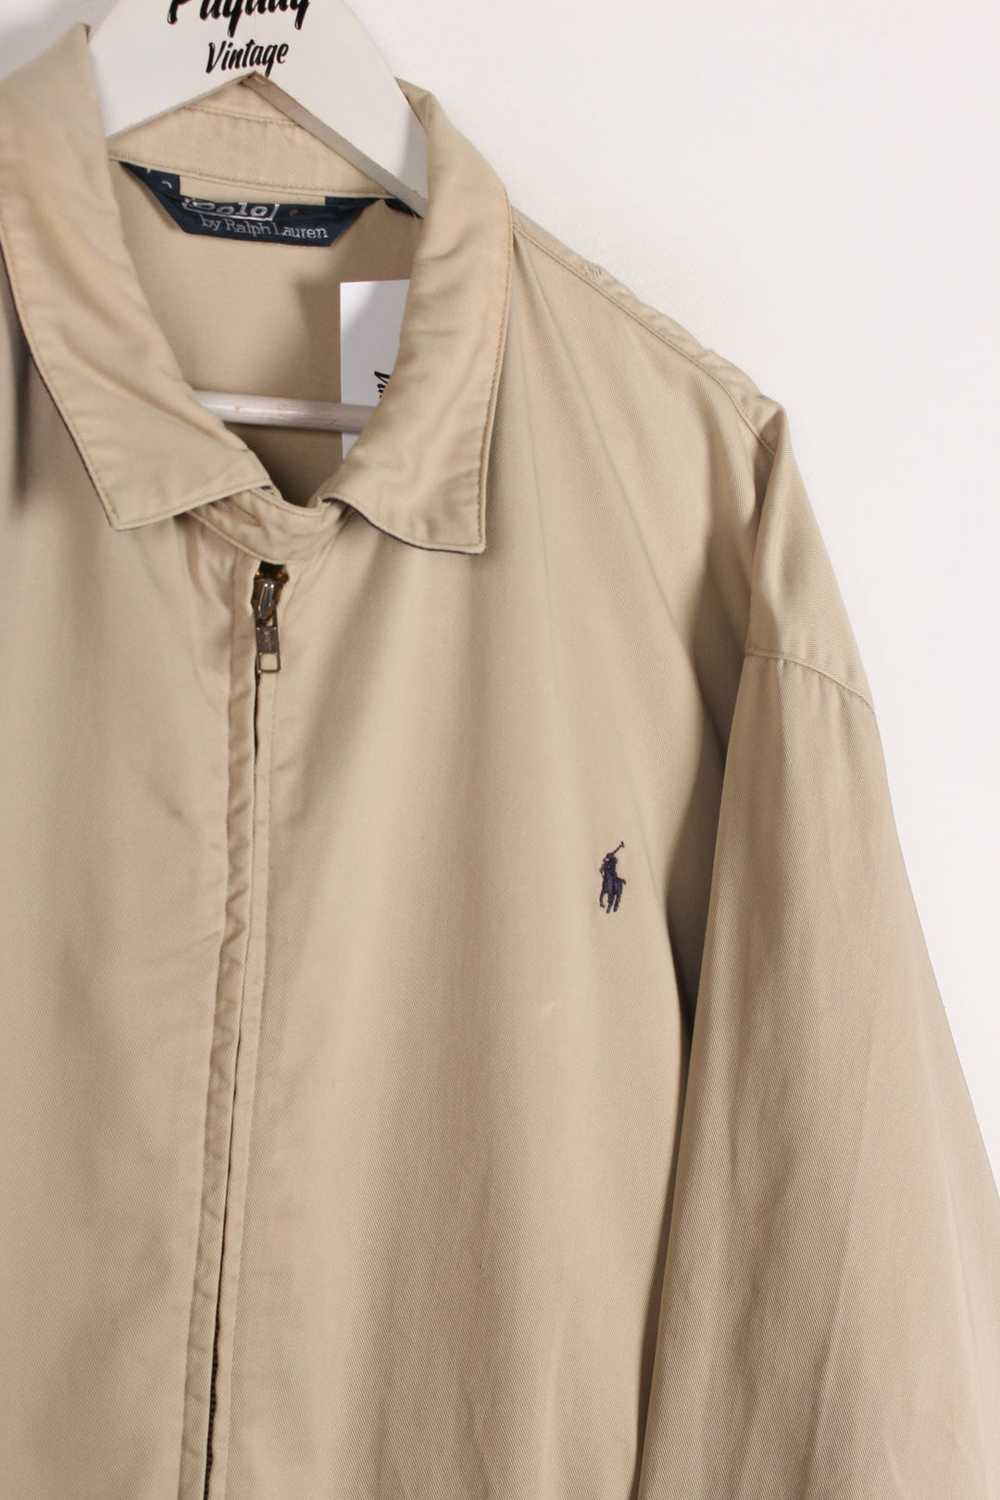 90's Ralph Lauren Harrington Jacket XL - image 2